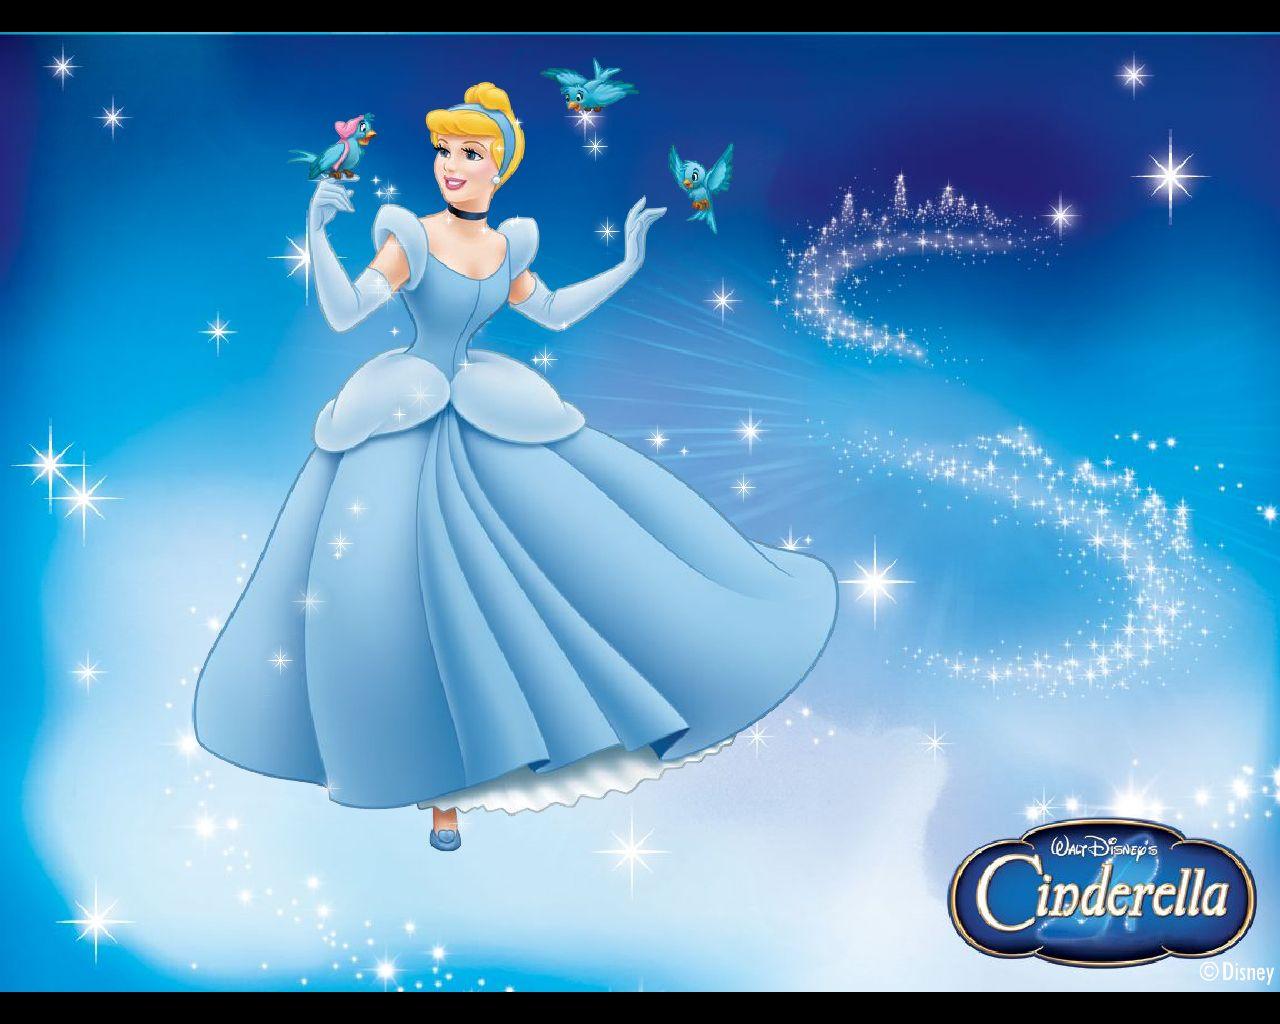 Disney Cinderella Wallpapers Wallpaper Cave Afalchi Free images wallpape [afalchi.blogspot.com]